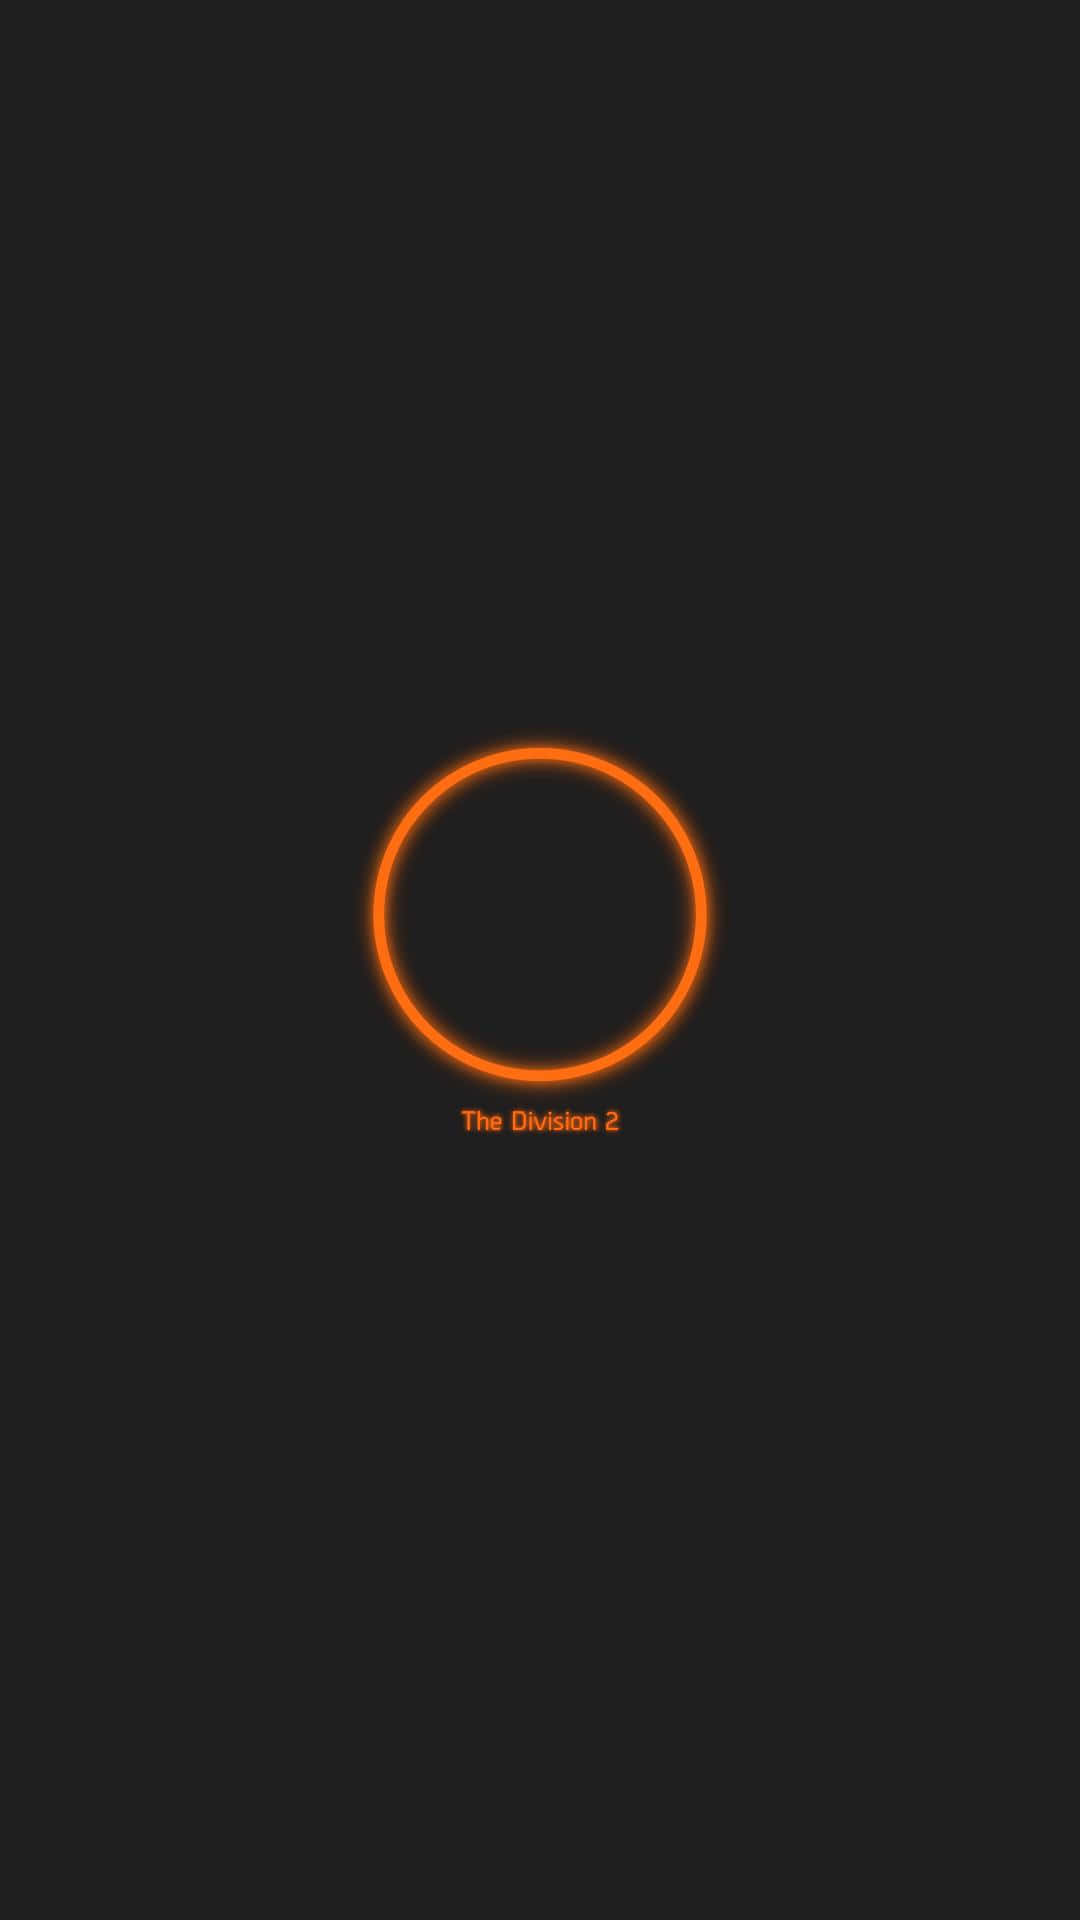 Sfondothe Division Con Il Logo Arancione Di Android